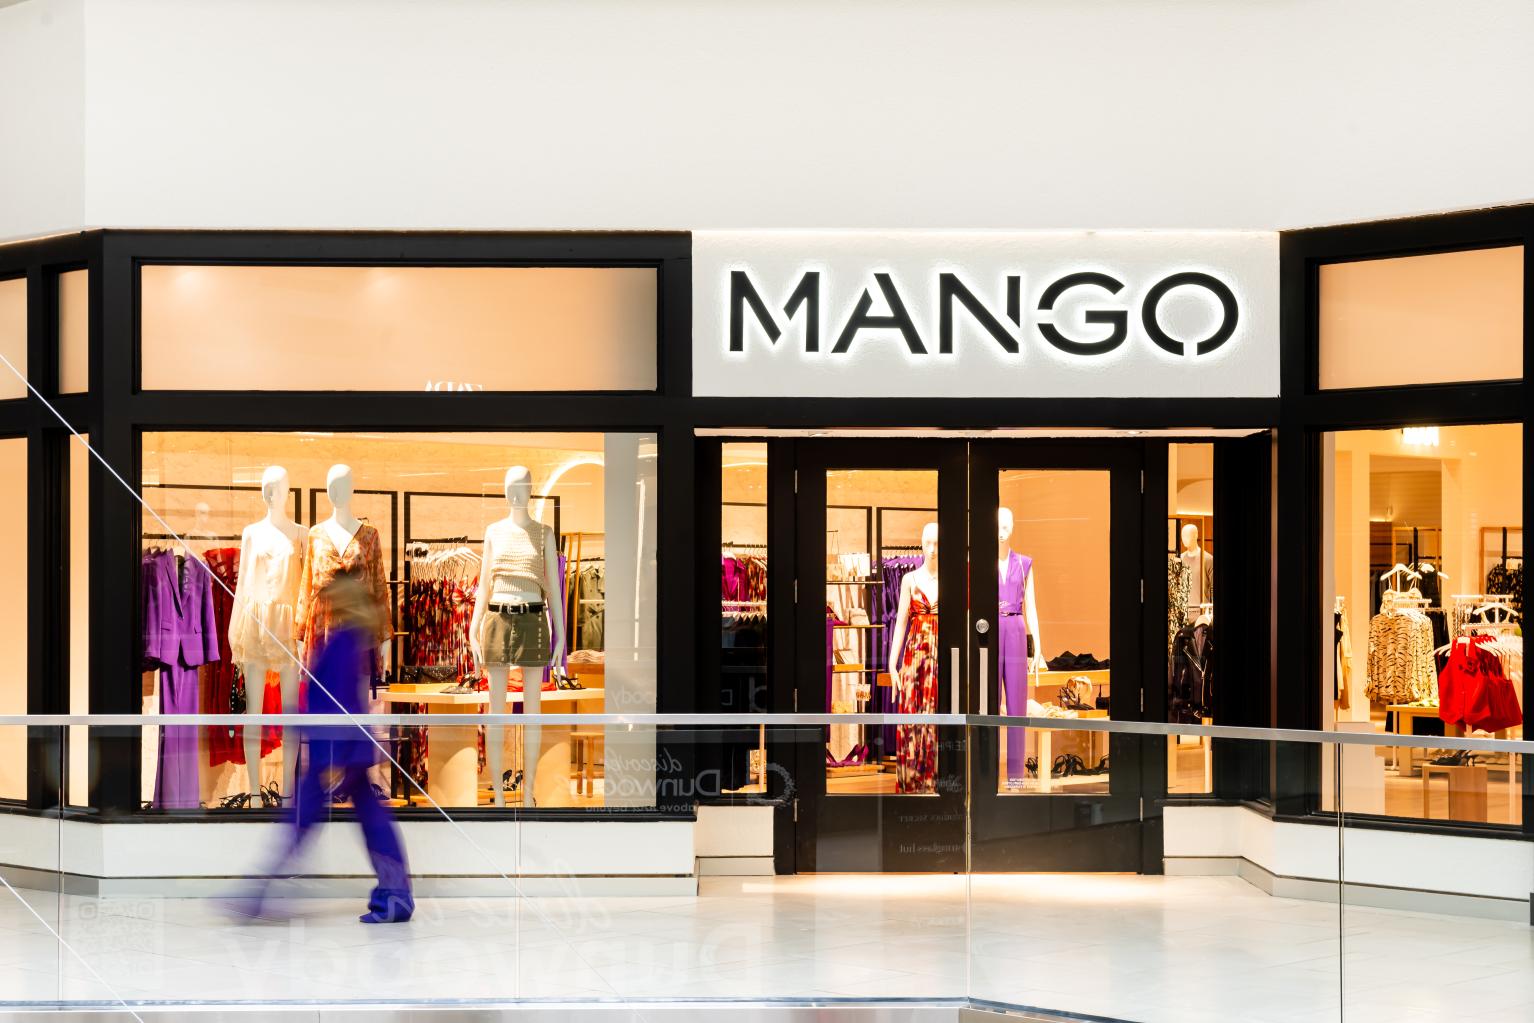 Tras la reciente apertura de Texas, Mango abre su primera tienda en Georgia y avanza en su expansión por Estados Unidos